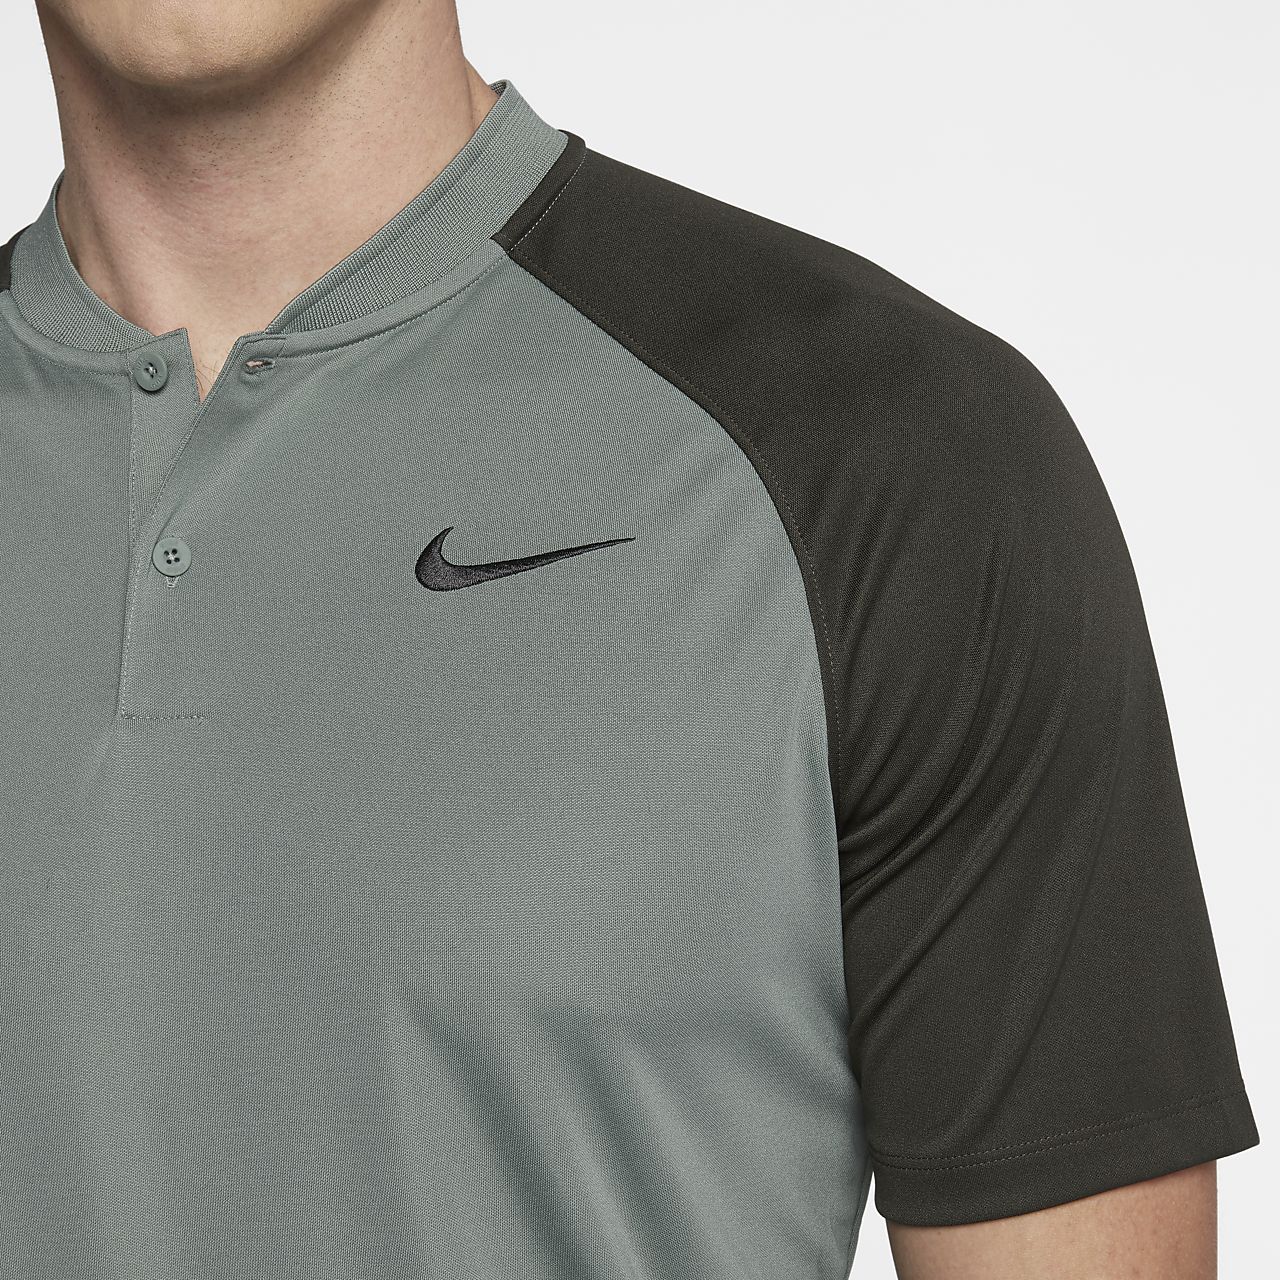 Nike Shirts Collarless Clearance, SAVE 53% -